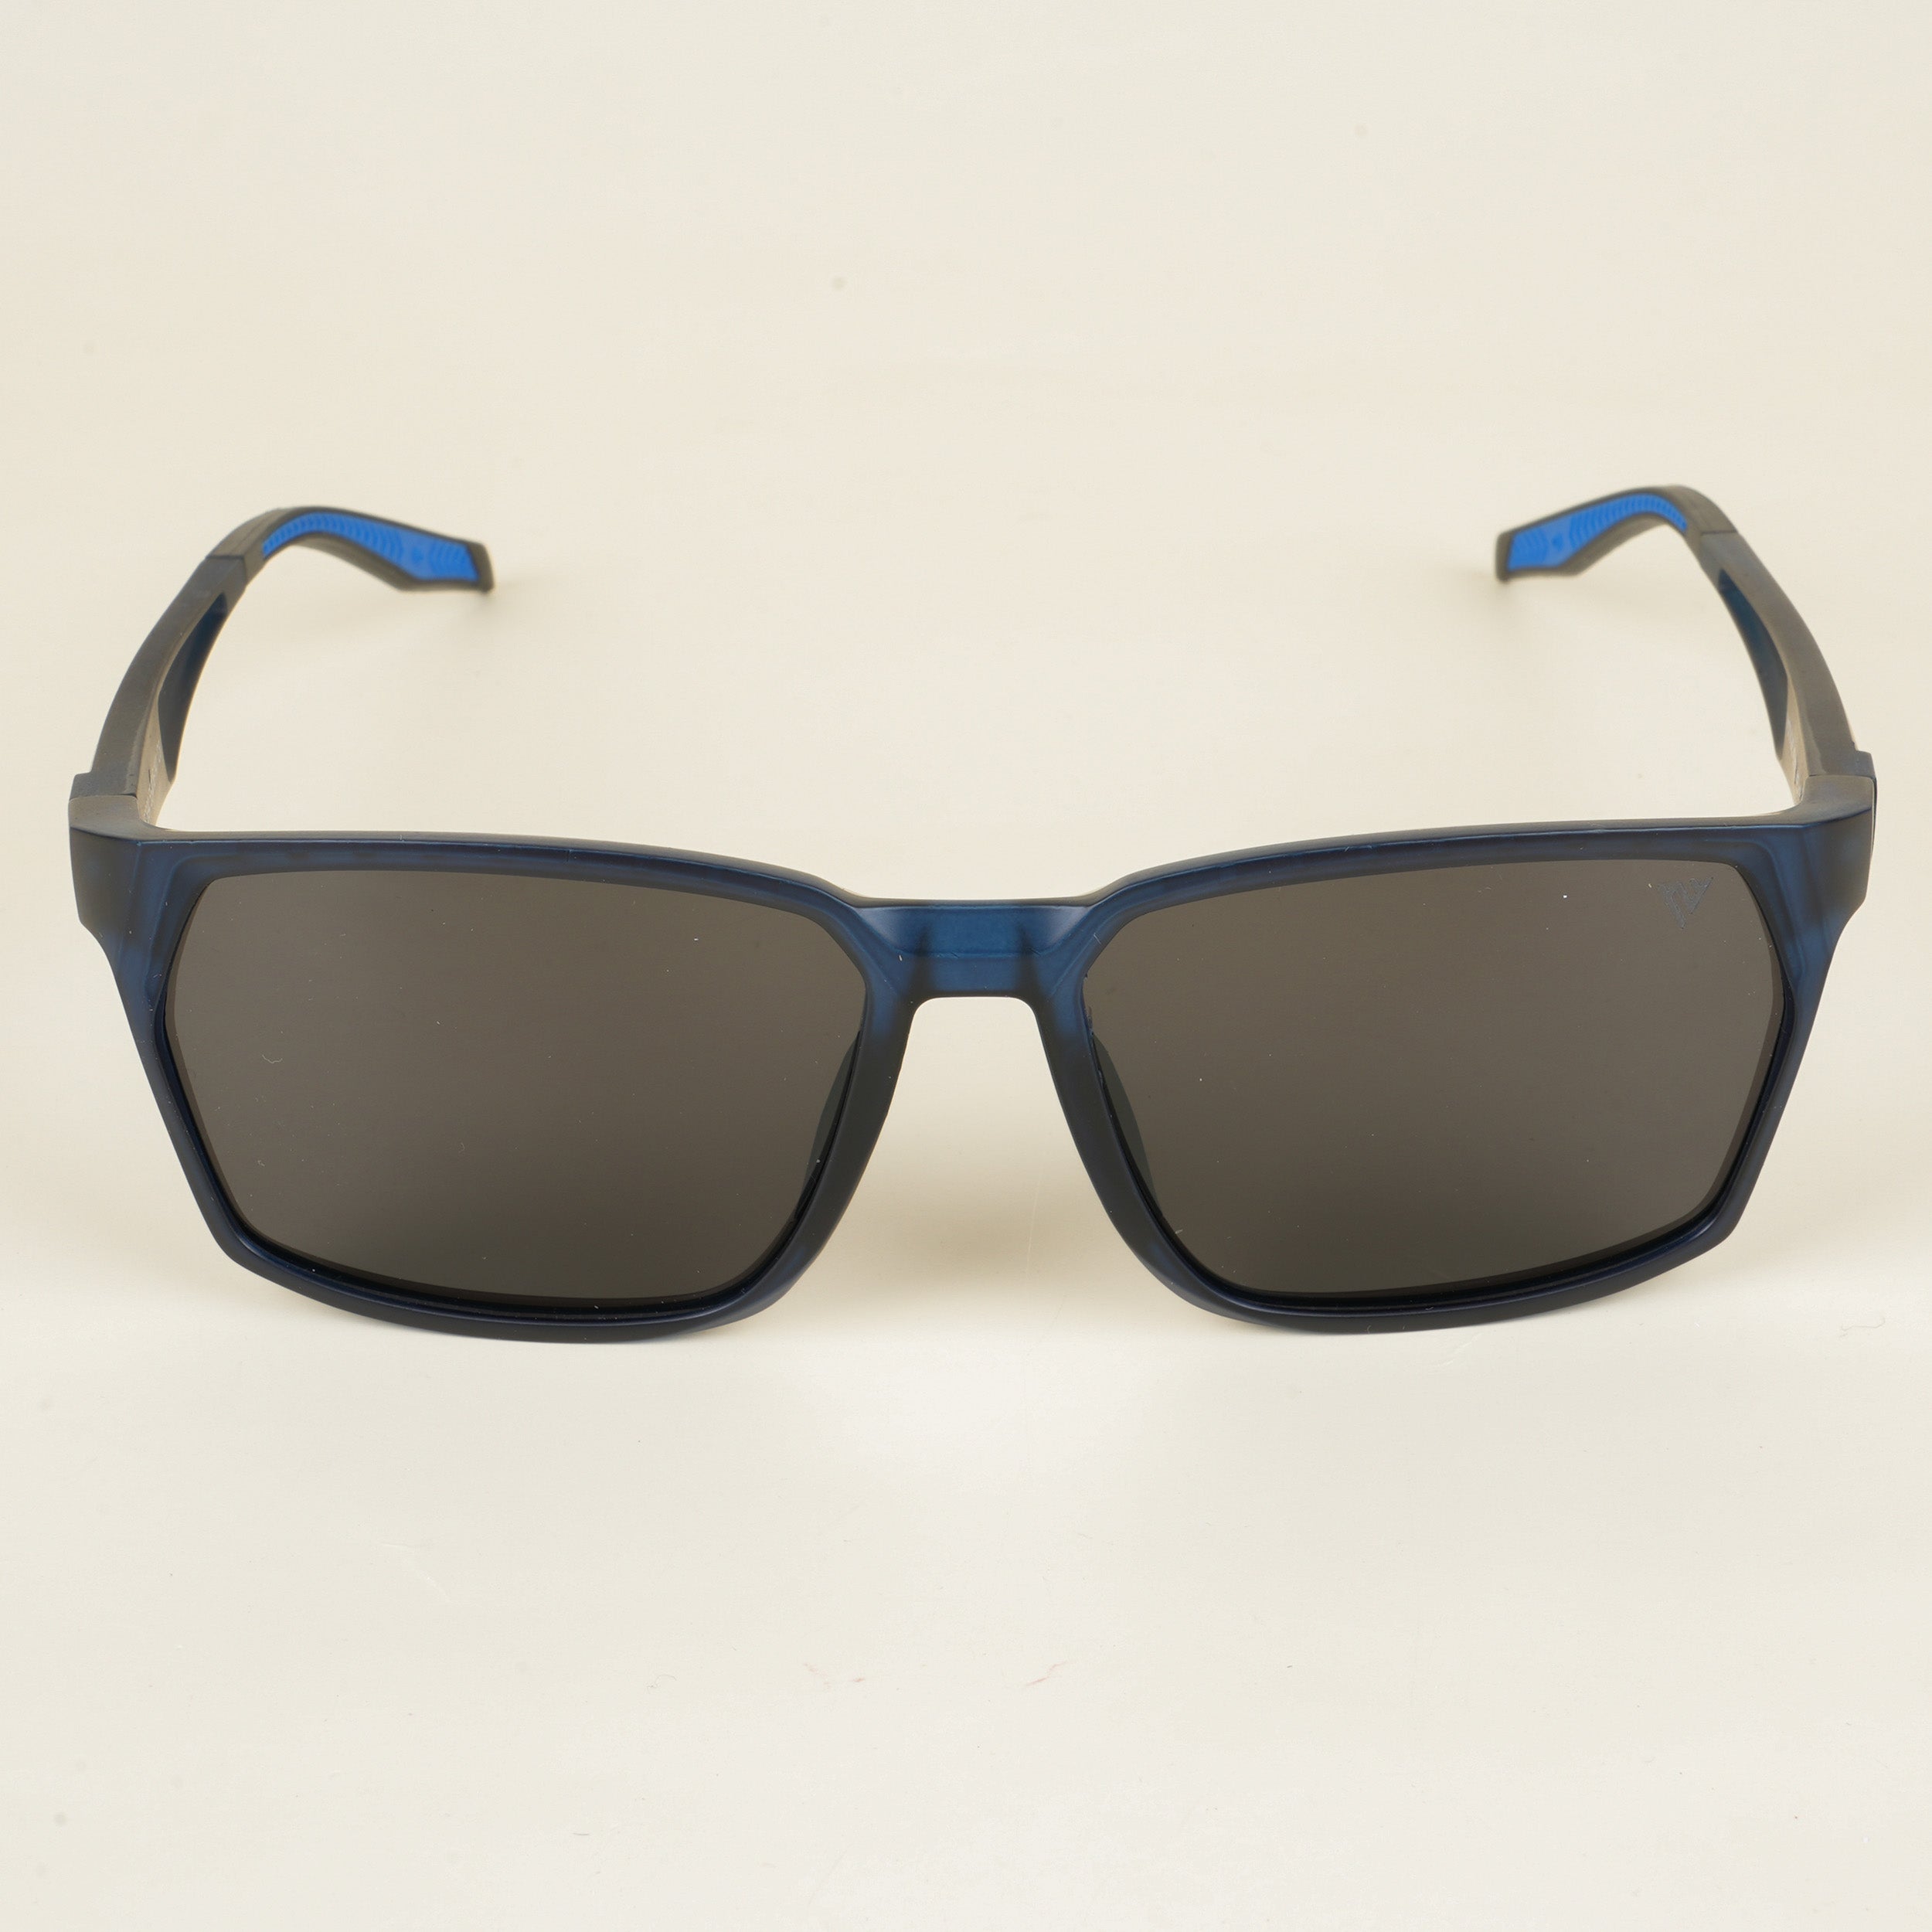 Voyage Wayfarer Polarized Sunglasses for Men & Women (Black Lens | Blue Frame - PMG5287)